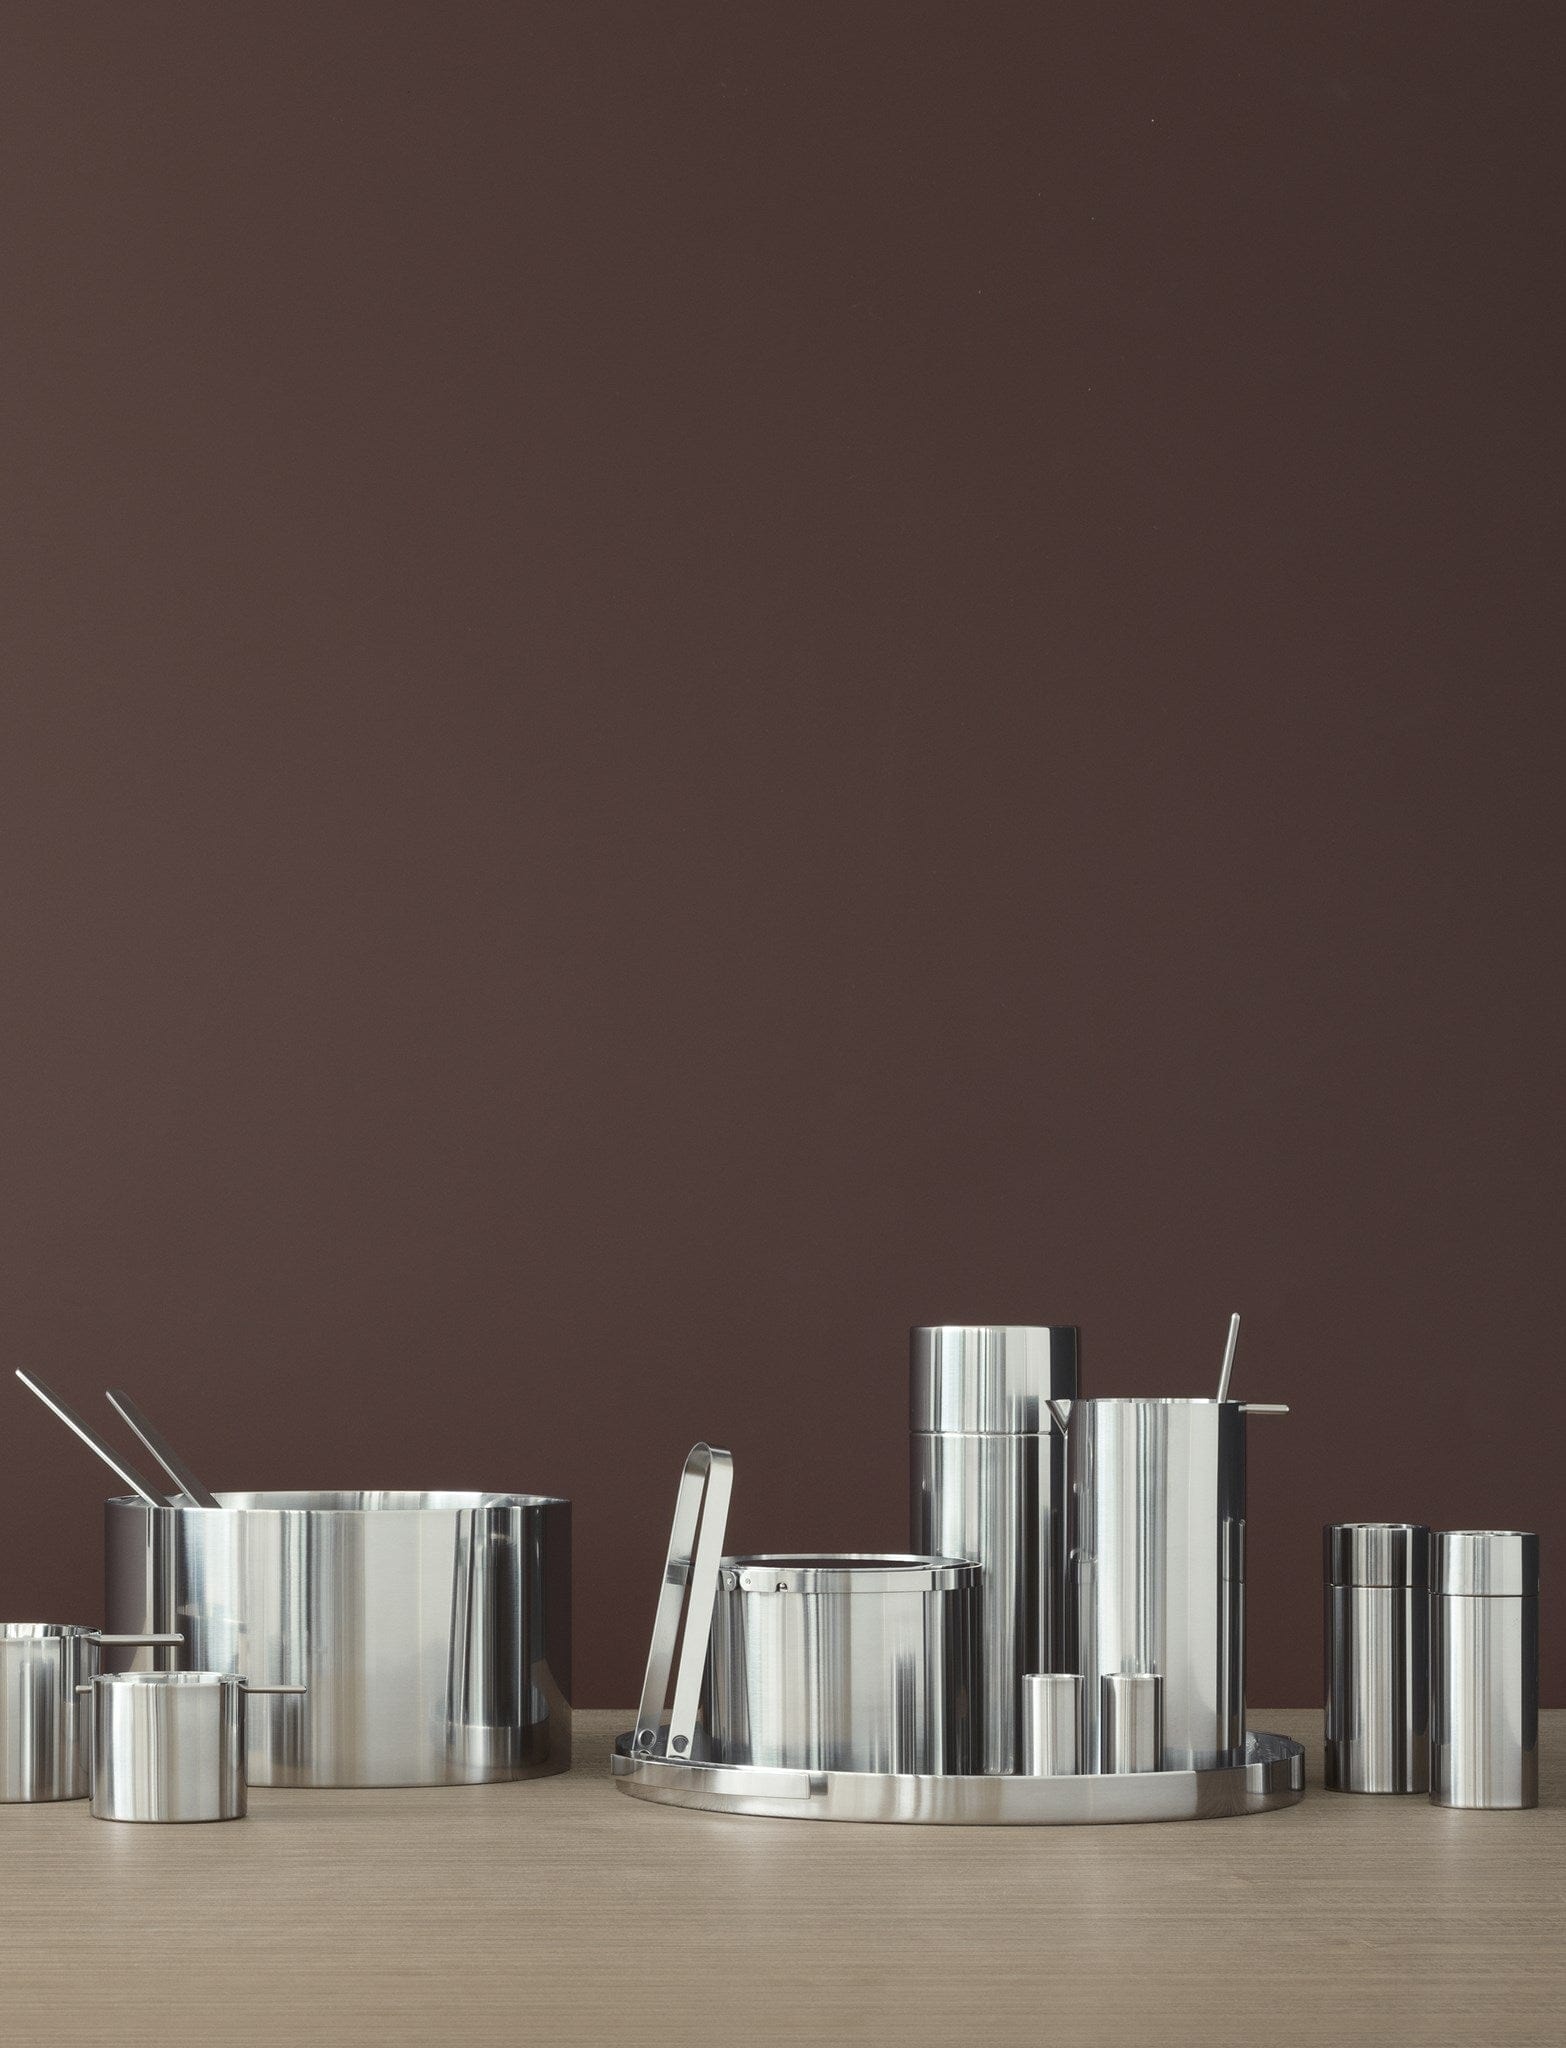 Stelton Arne Jacobsen Salt/Pepper Shaker